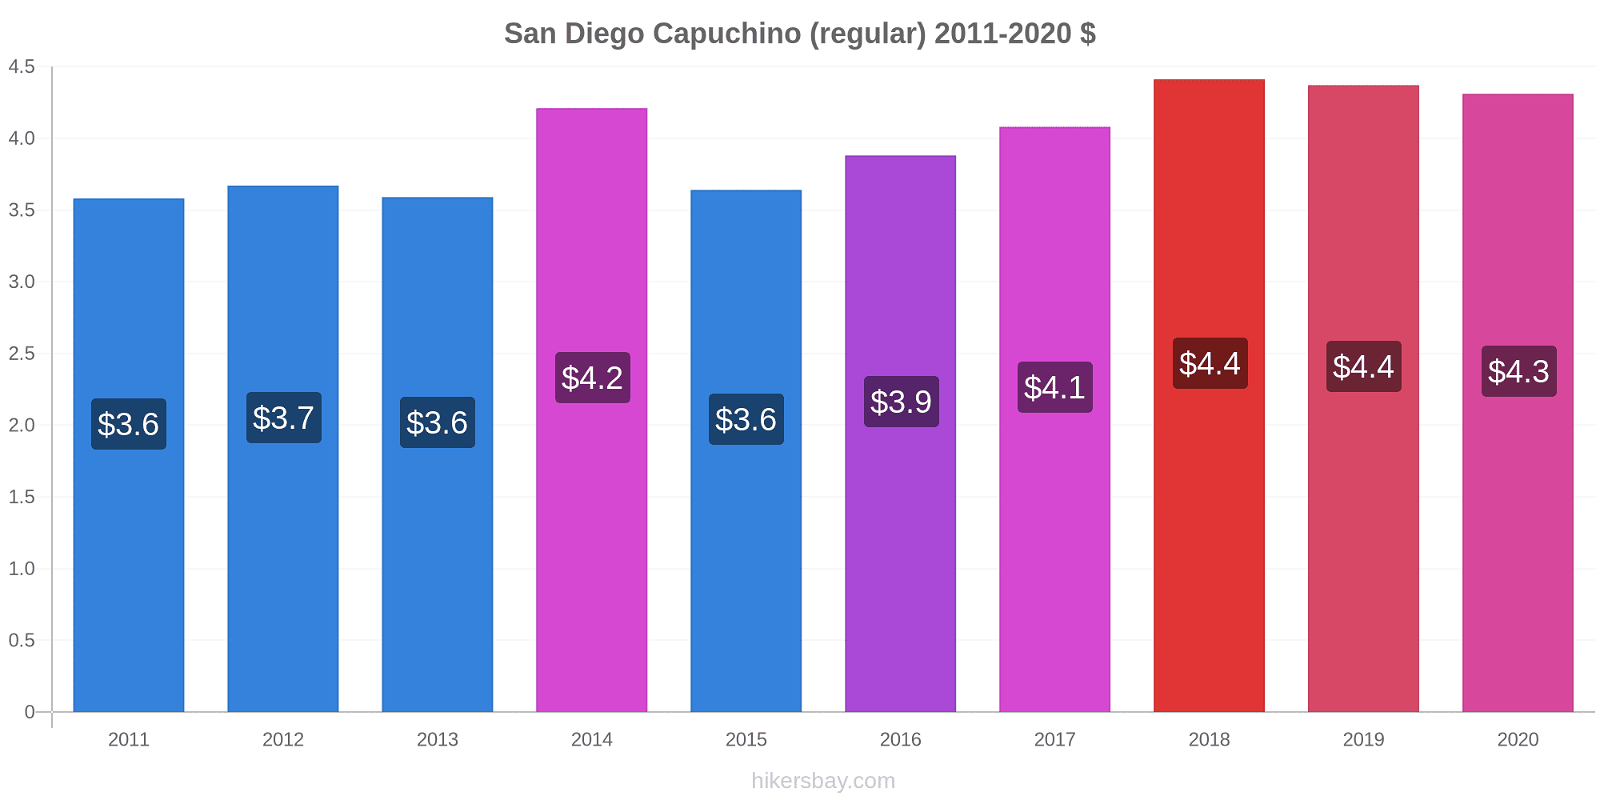 San Diego cambios de precios Capuchino (regular) hikersbay.com